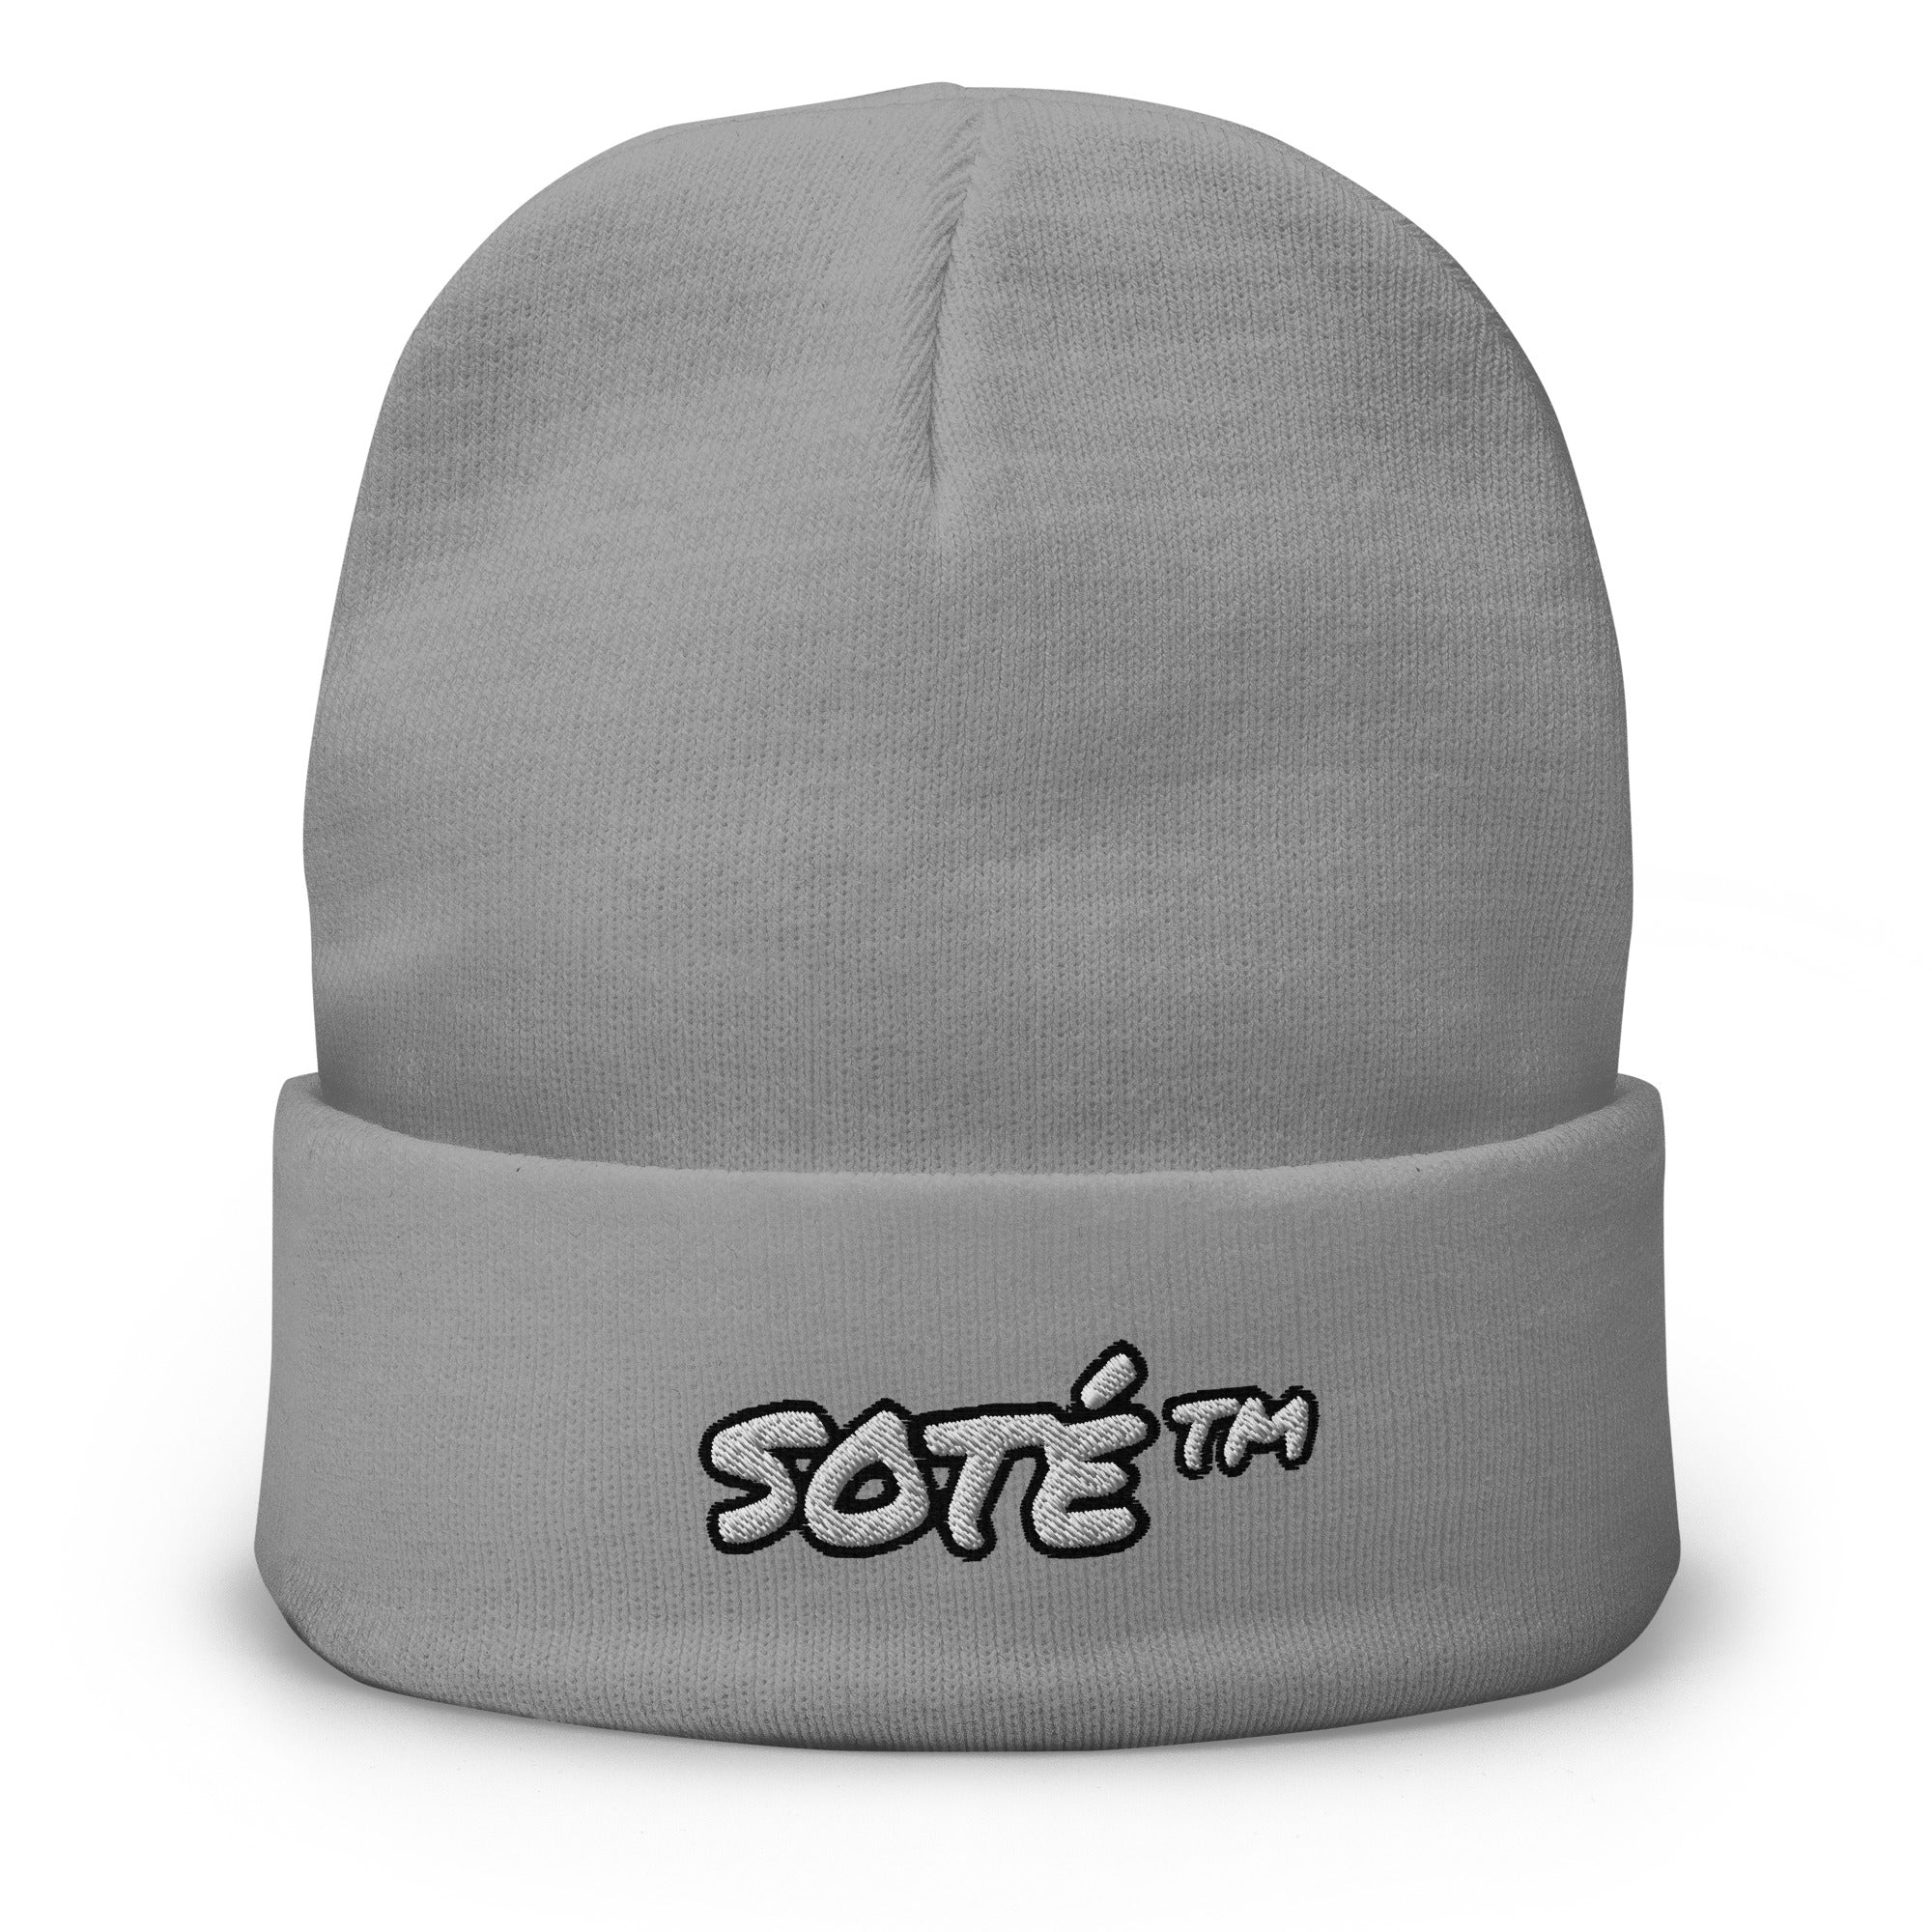 SOTÉ Beanie Hat